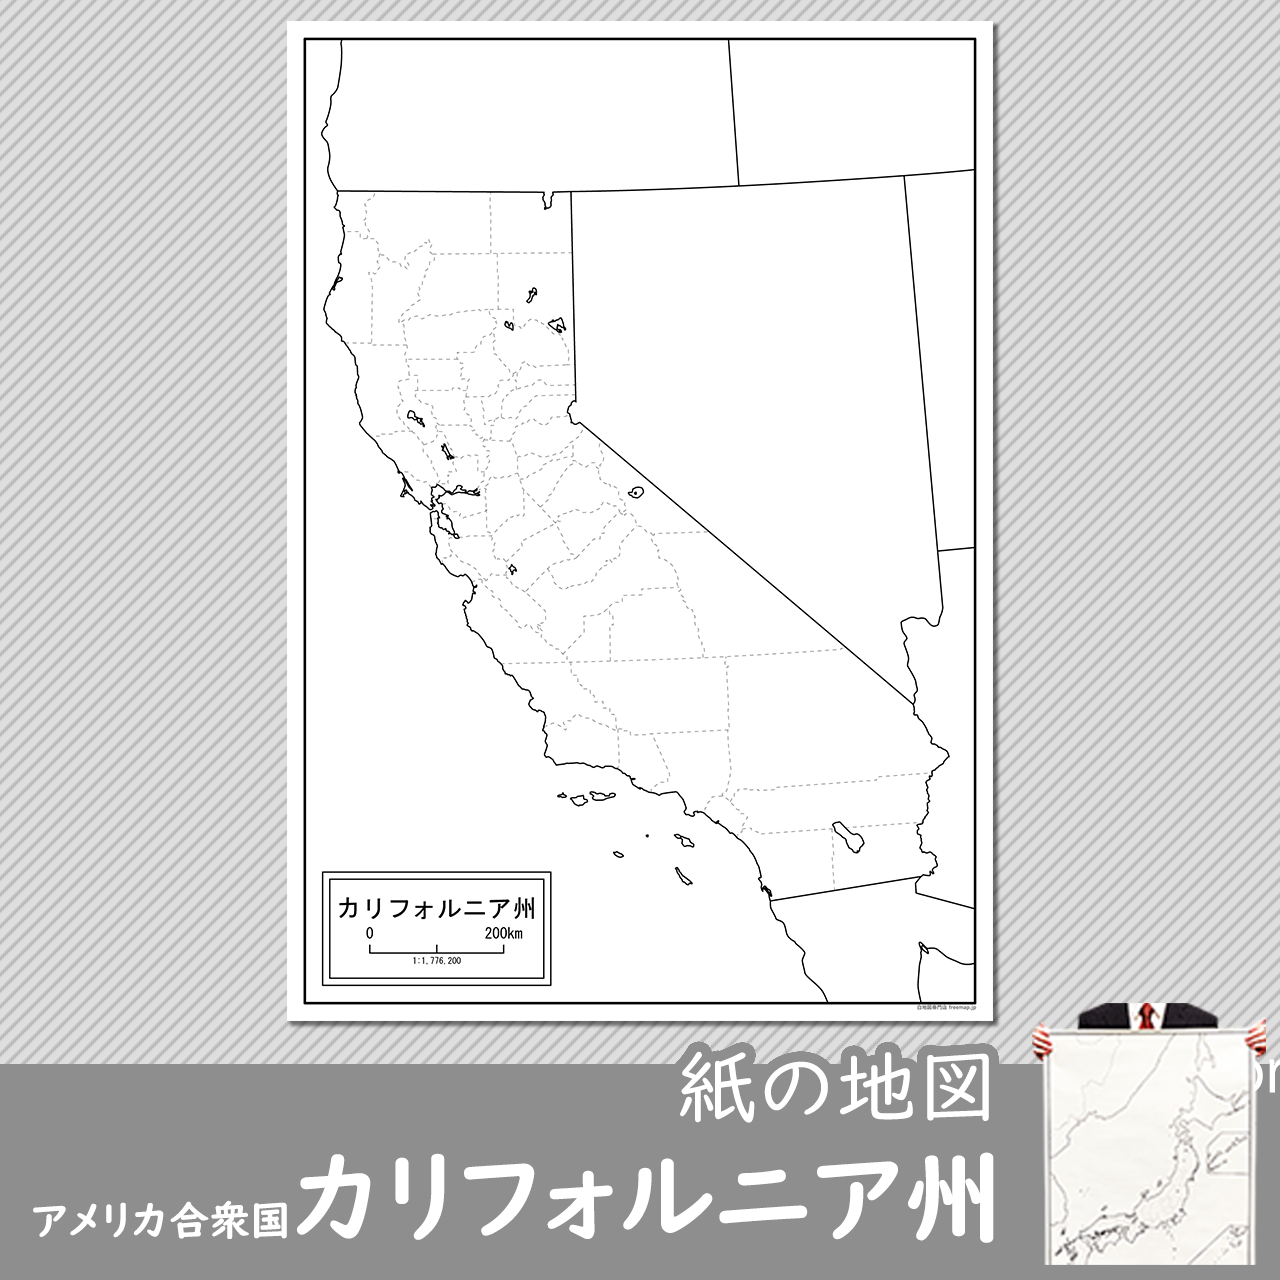 カリフォルニア州の紙の白地図のサムネイル